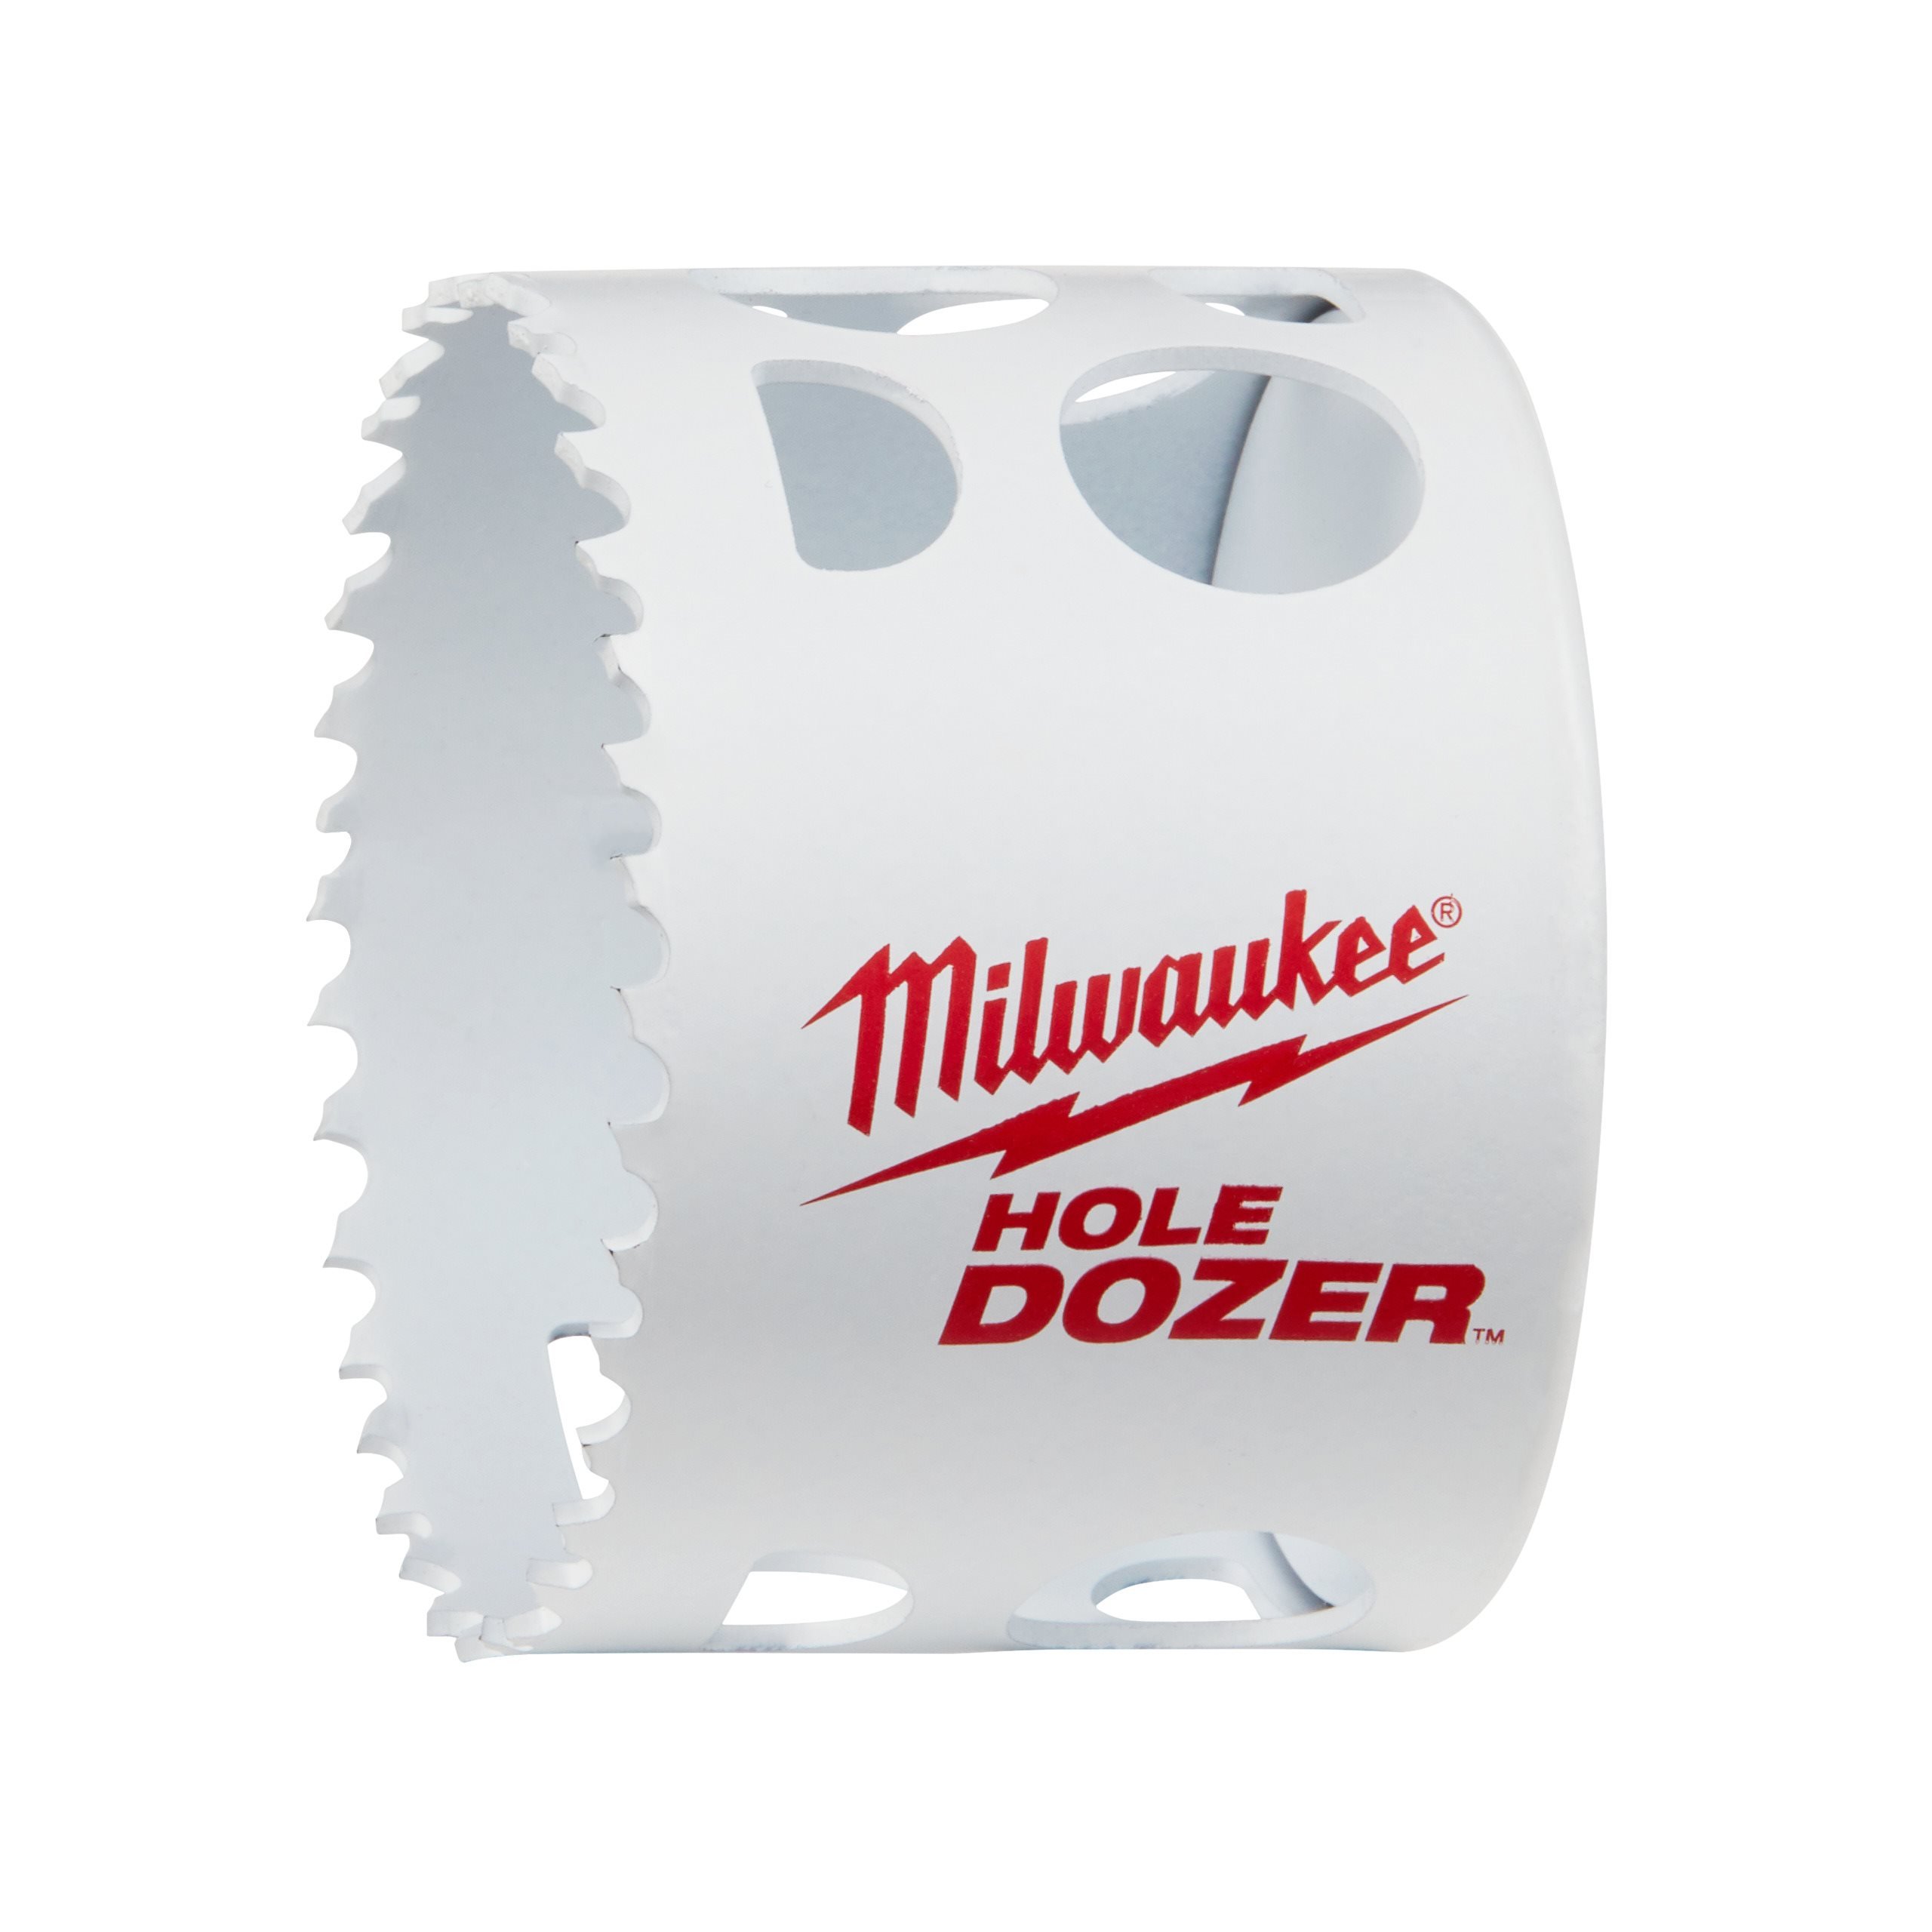 Milwaukee HOLE DOZER™ Bi Metall Lochsägen 14-210 mm Lochkreissäge